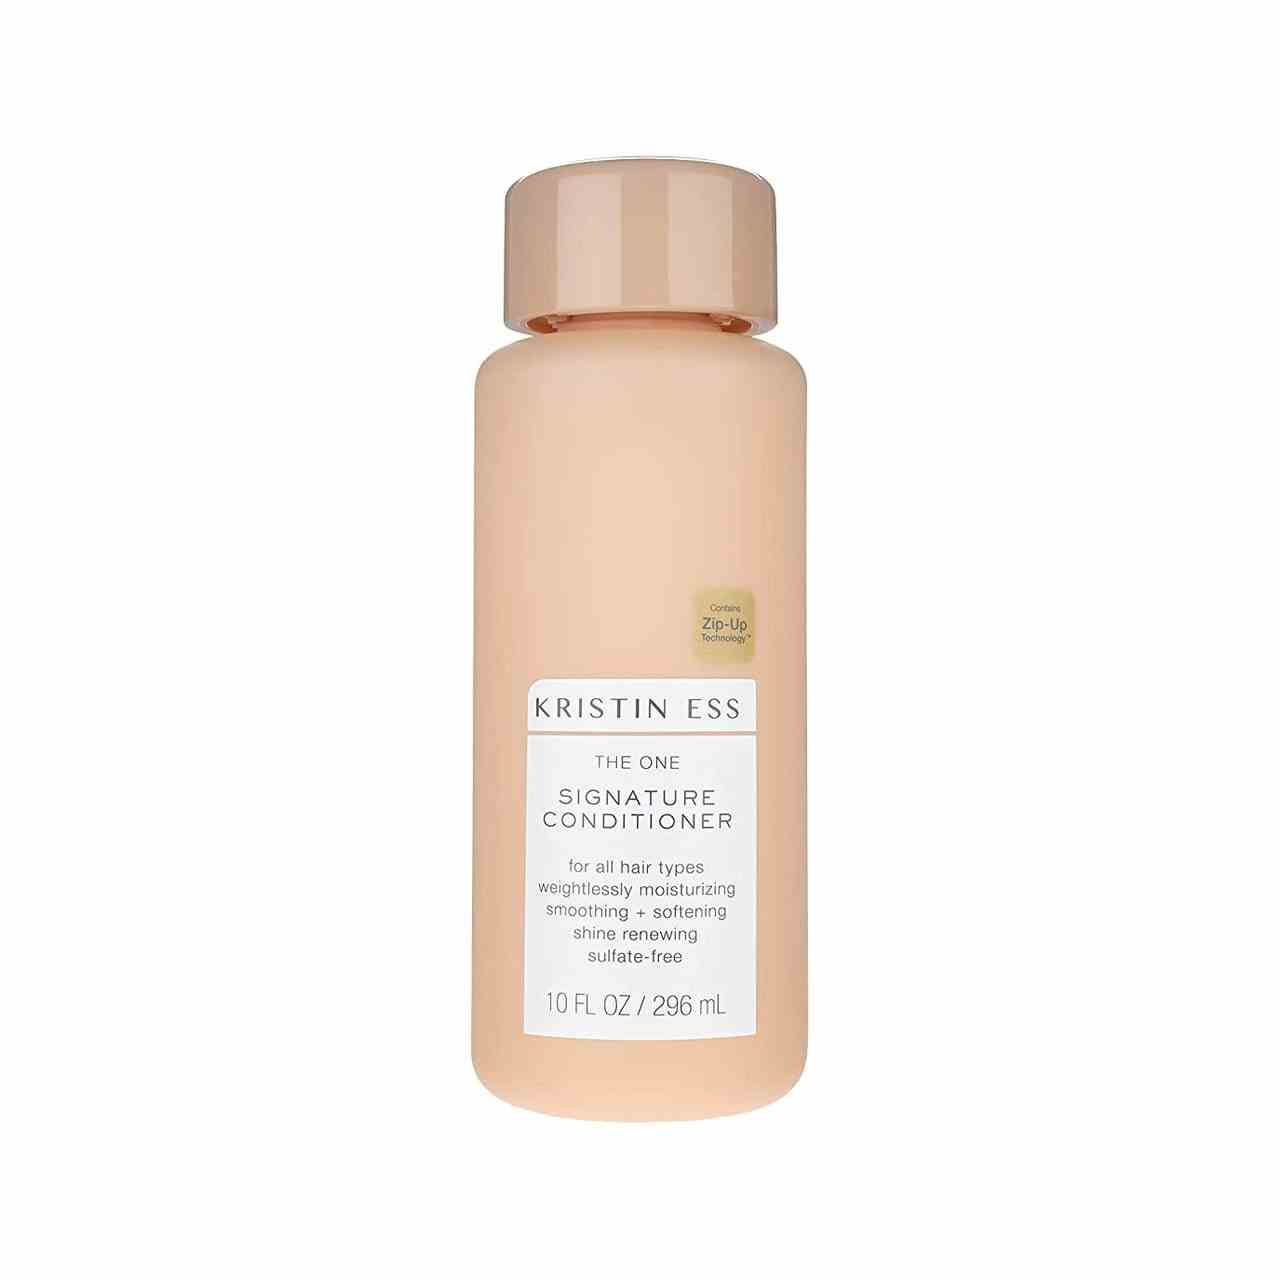 Kristin Ess extra sanfter Conditioner für empfindliche Haut + Kopfhaut rosa Flasche Shampoo auf weißem Hintergrund